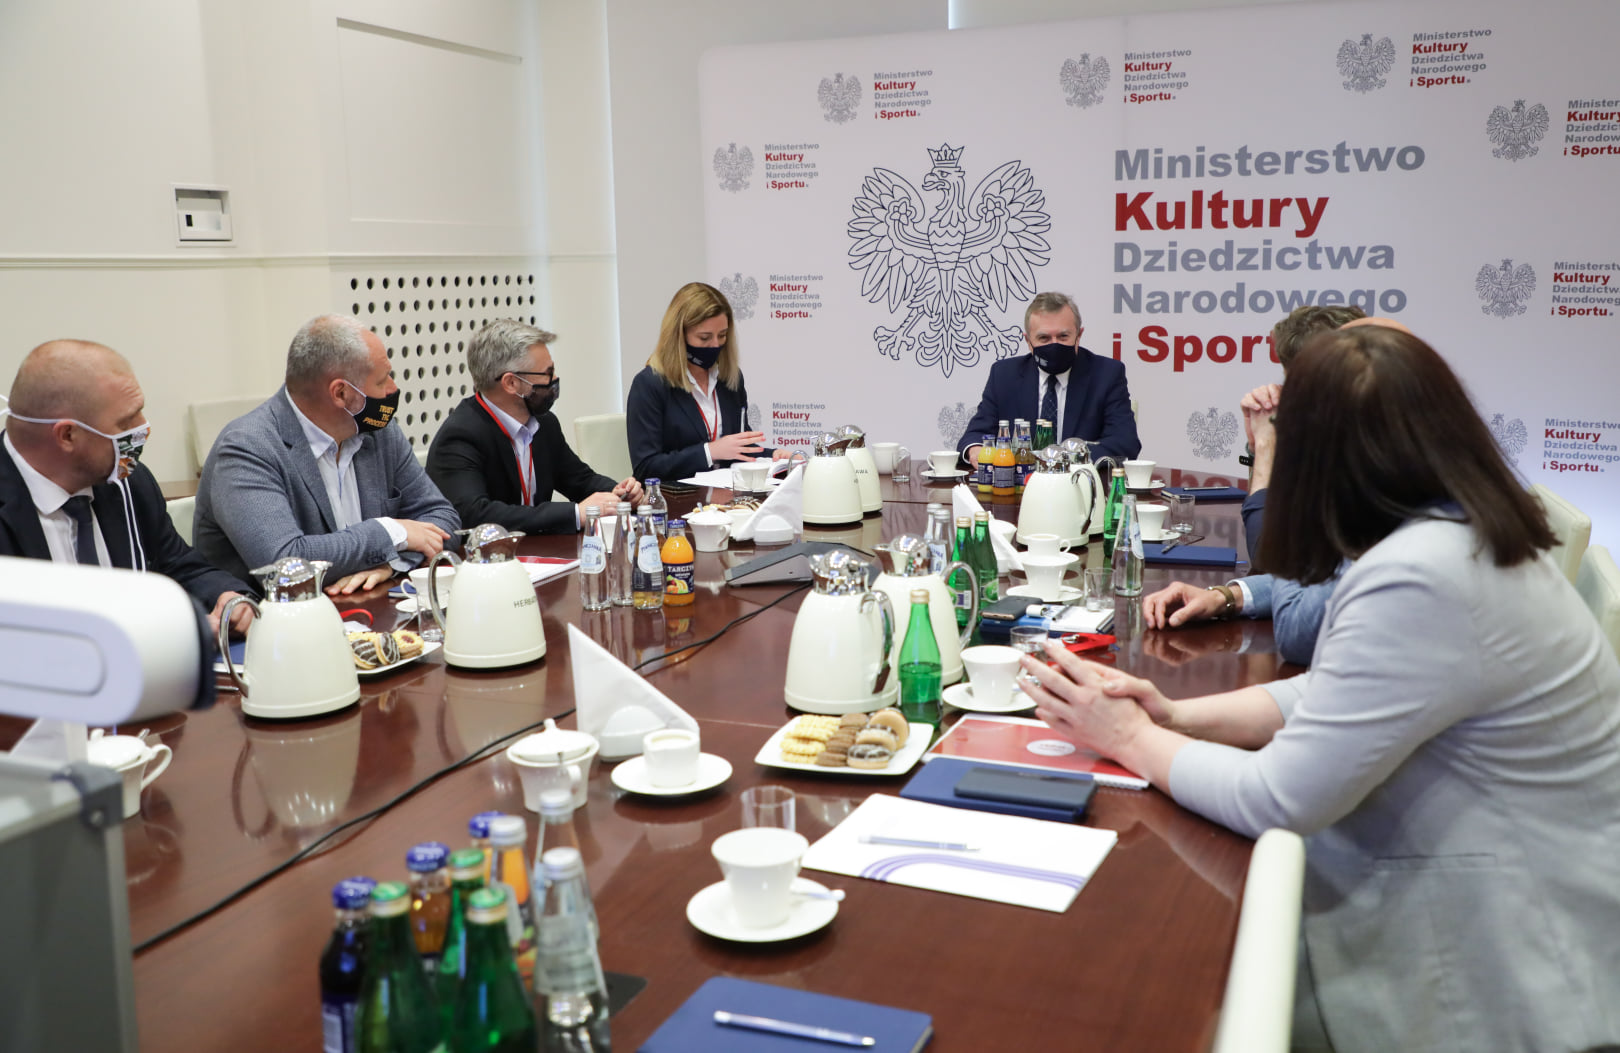 Spotkanie w Ministerstwie Kultury, Dziedzictwa Narodowego i Sportu.